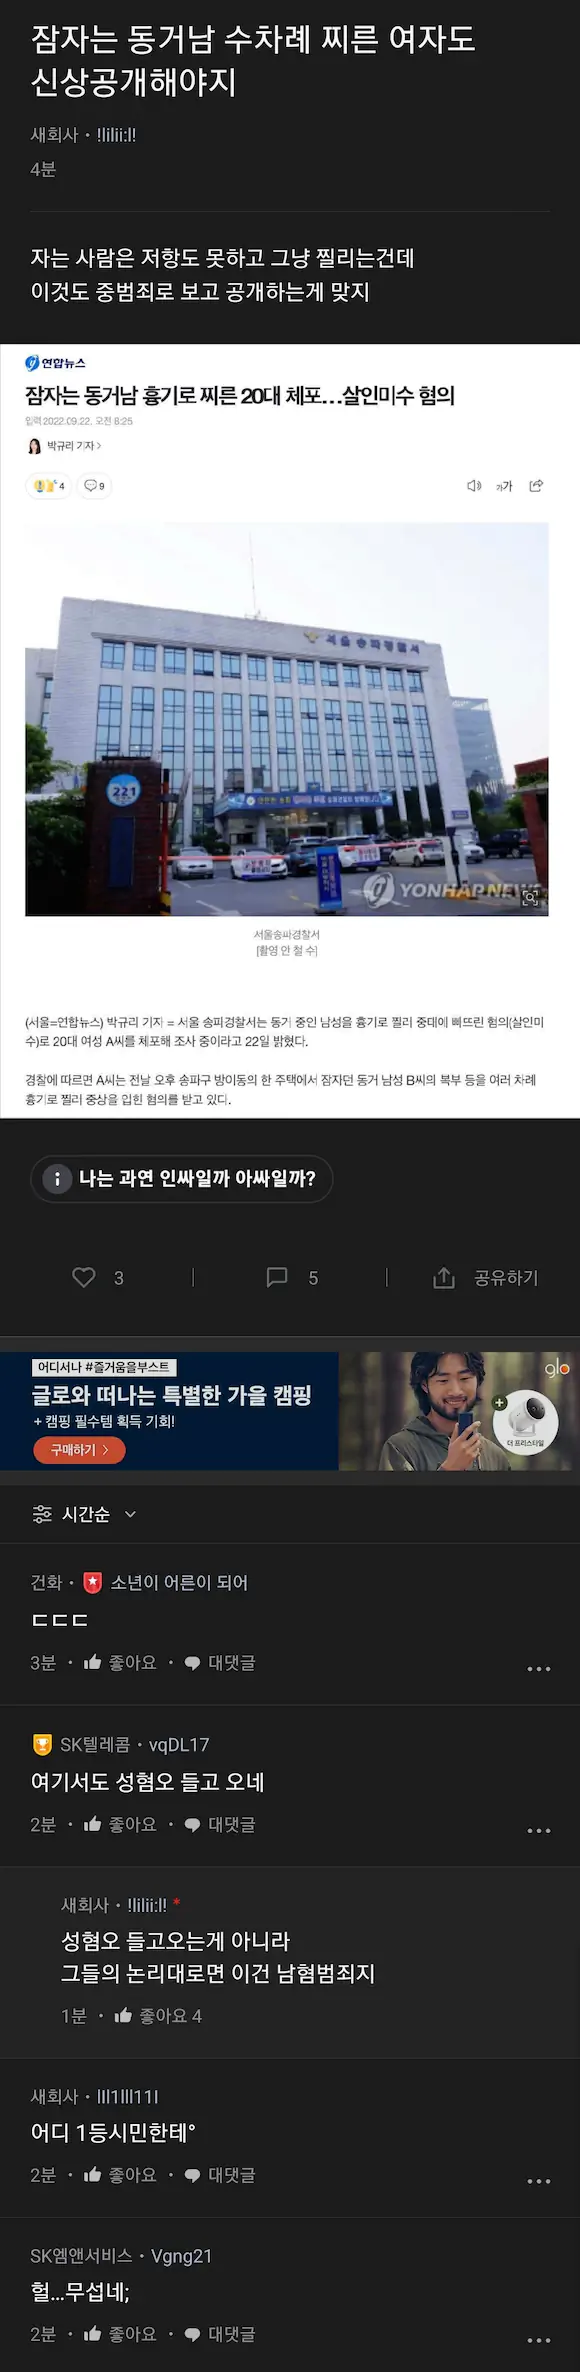 신당역 살인 피의자 신상 공개 반응 블라인드 글